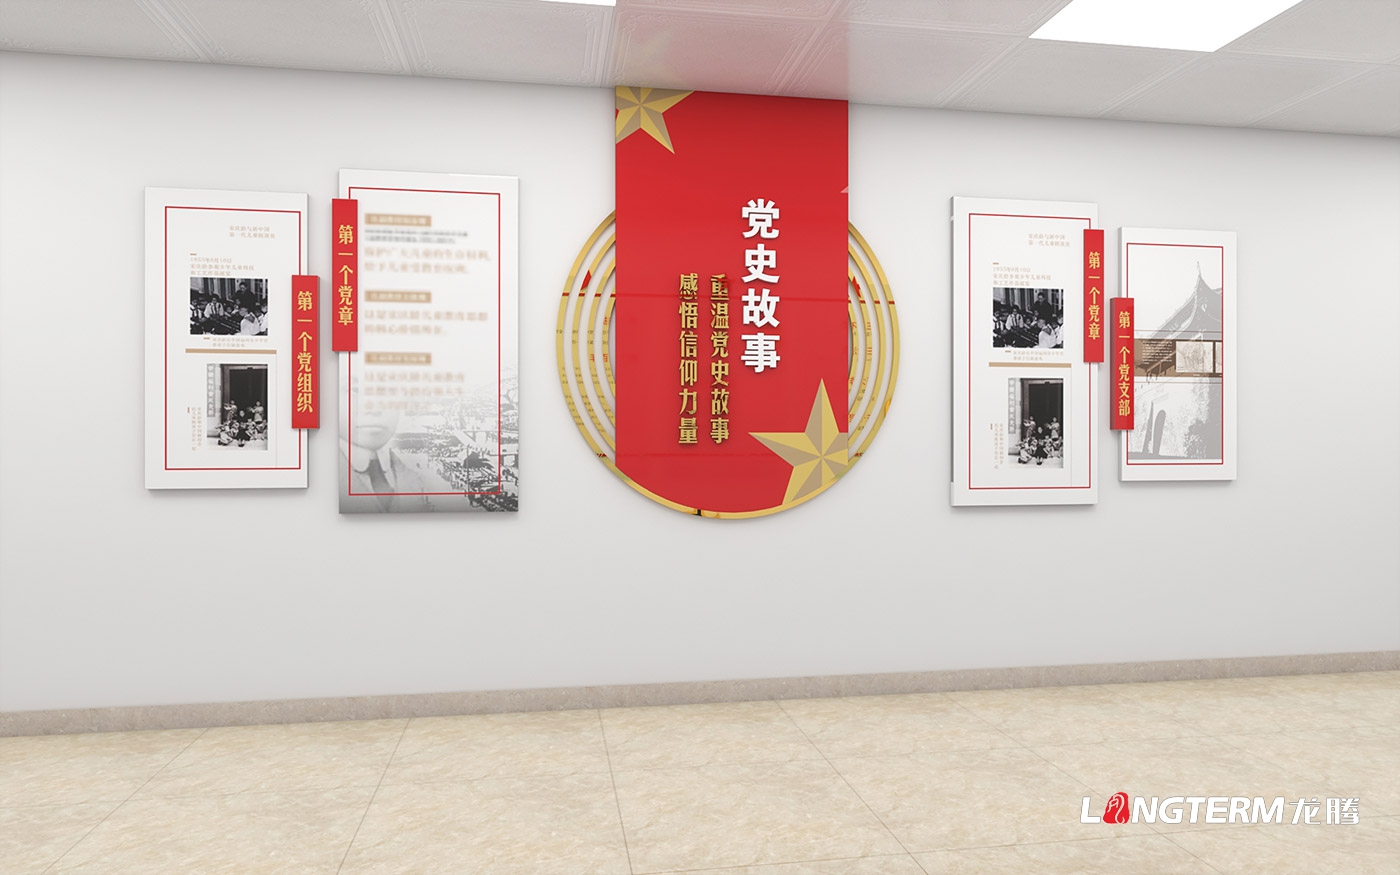 双流科学技术厅(科技厅)党政红色文化上墙设计_法治文化阵地实施方案_党员活动室设计